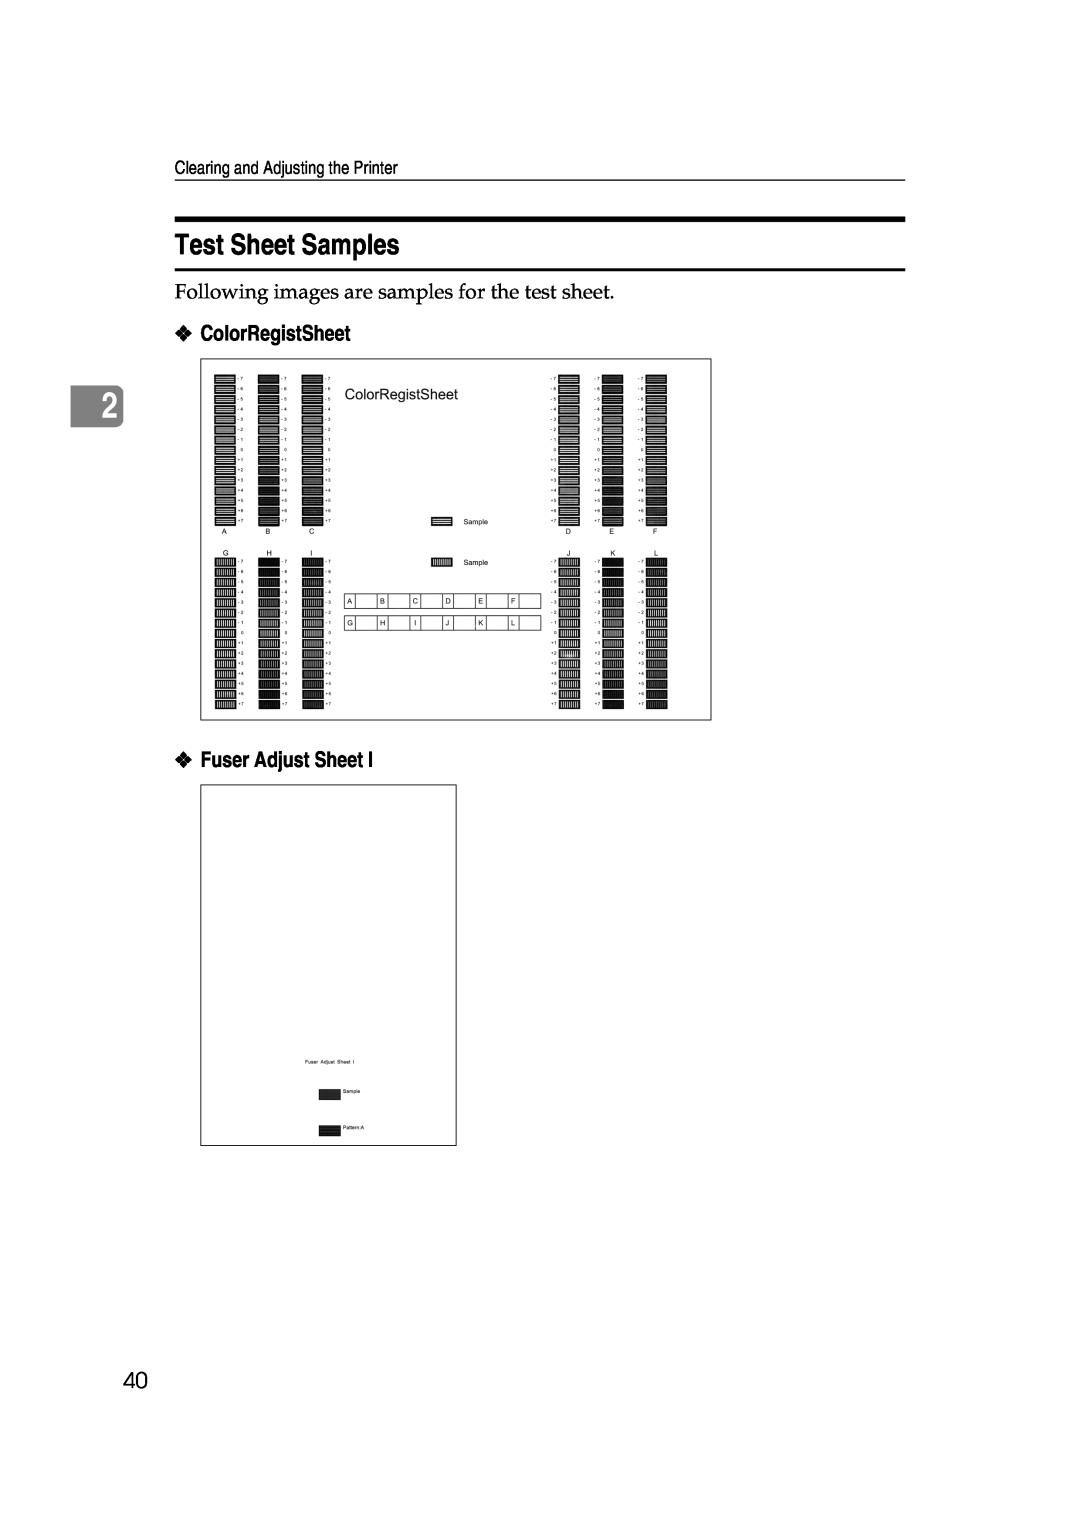 Savin SLP38C manual Test Sheet Samples, ColorRegistSheet, Fuser Adjust Sheet, Clearing and Adjusting the Printer 